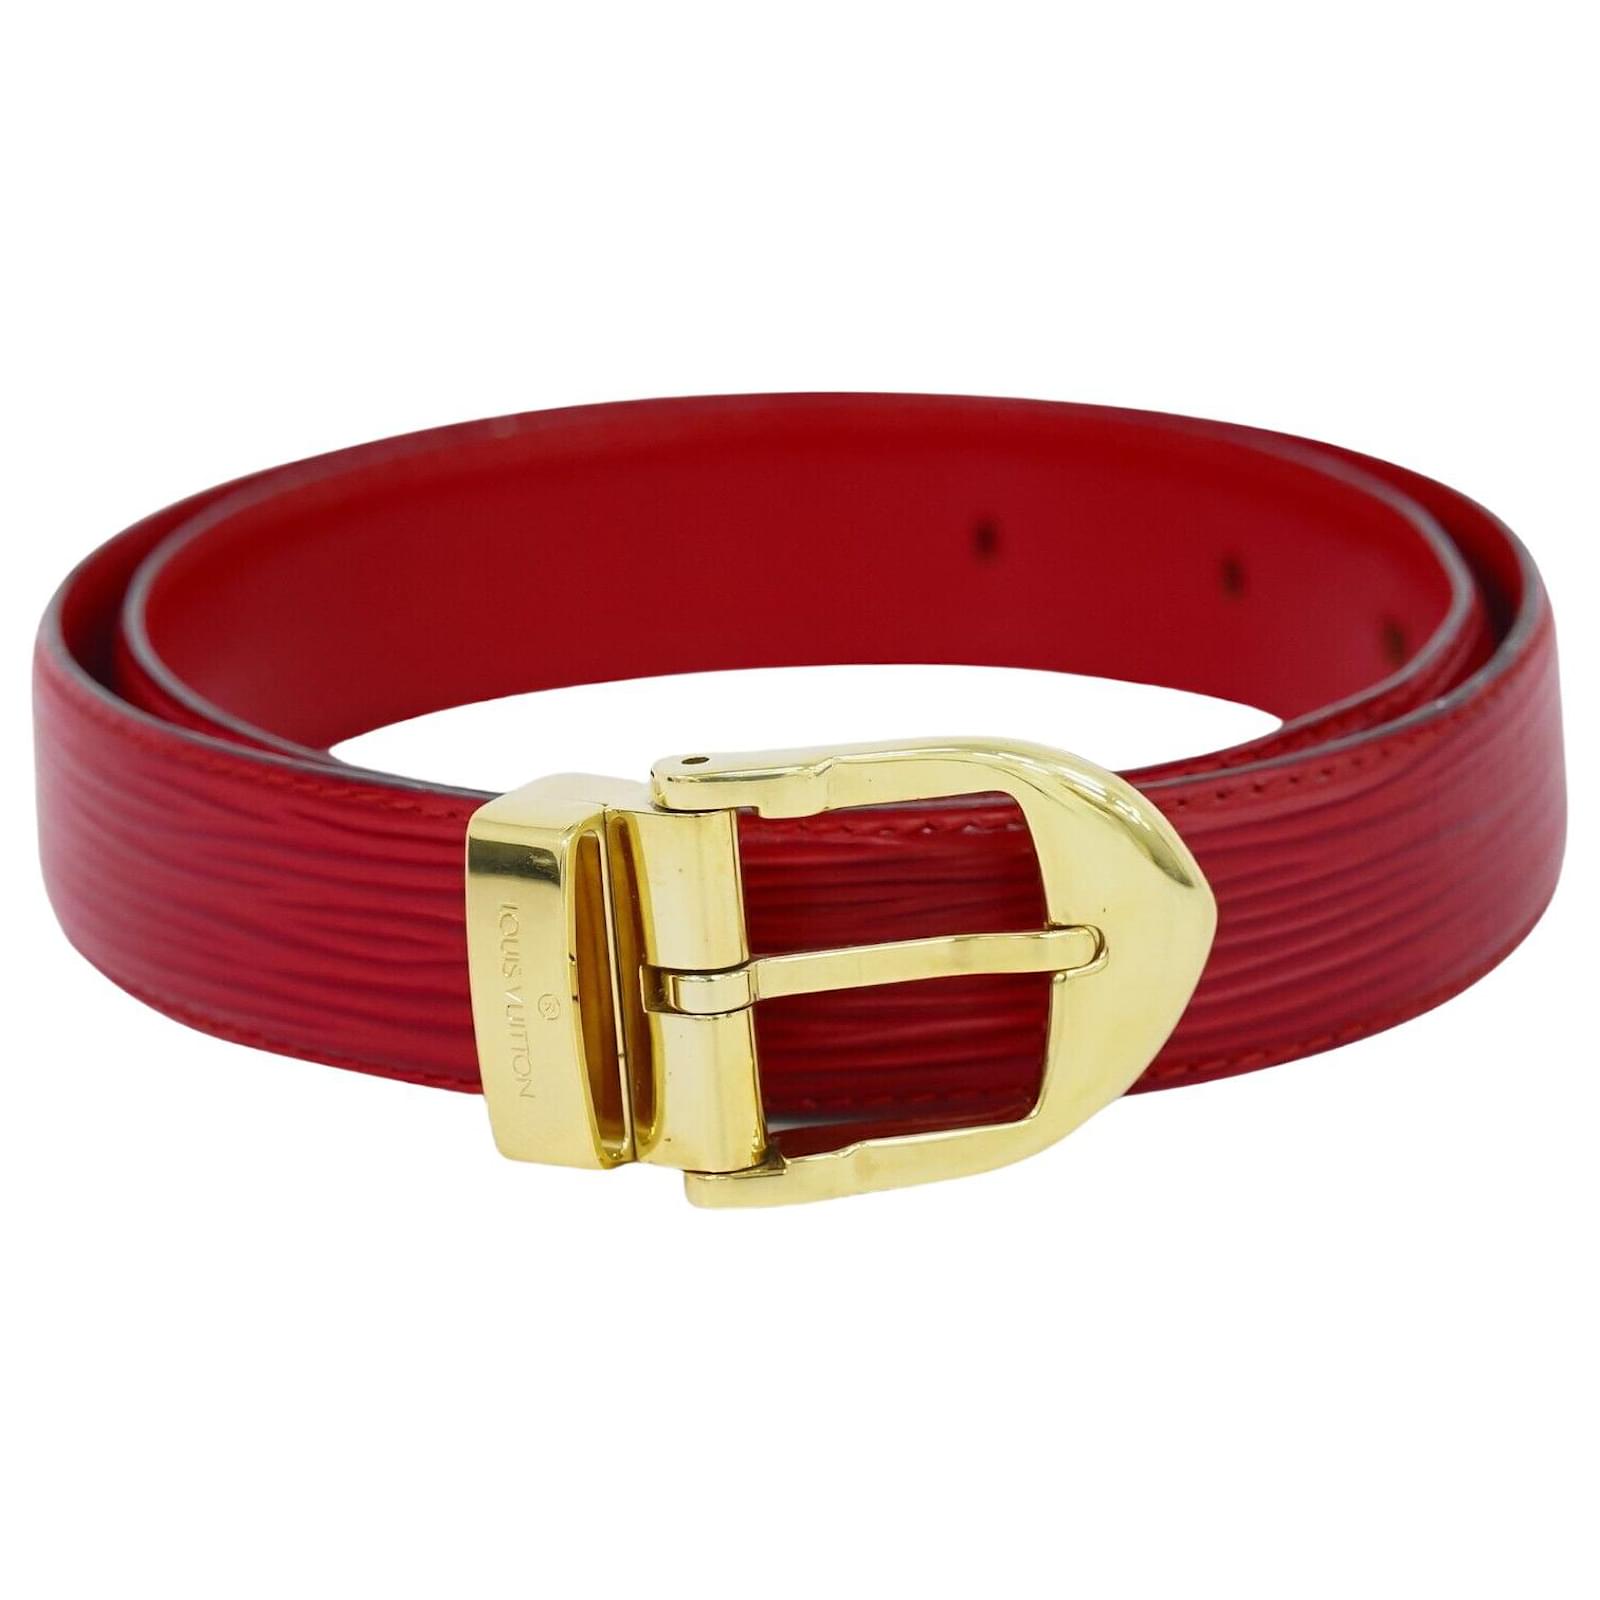 Initiales leather belt Louis Vuitton Multicolour size 90 cm in